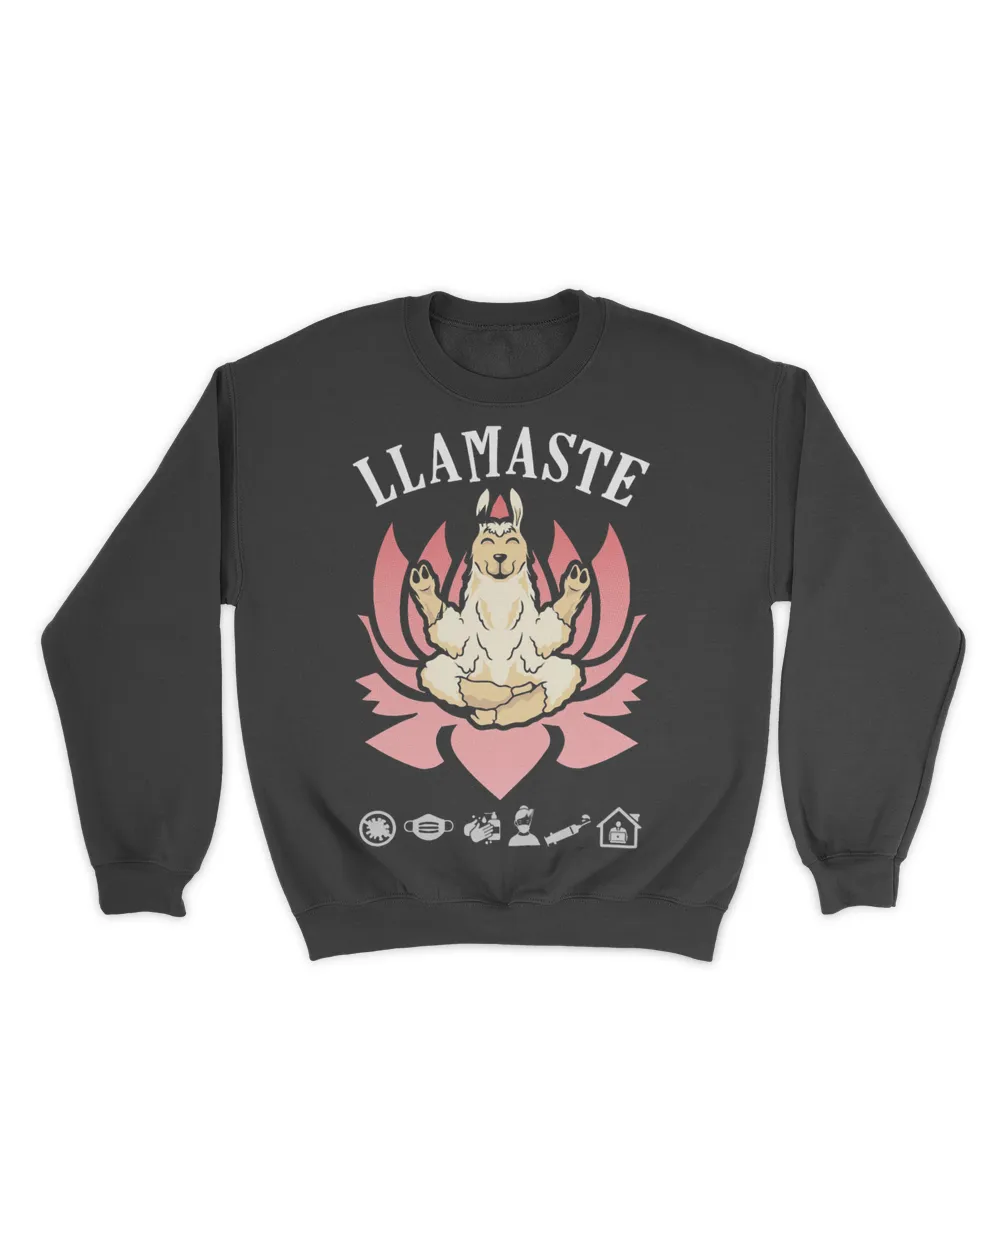 Llama Doing Yoga Funny Graphic Tee Plus Size Namaste